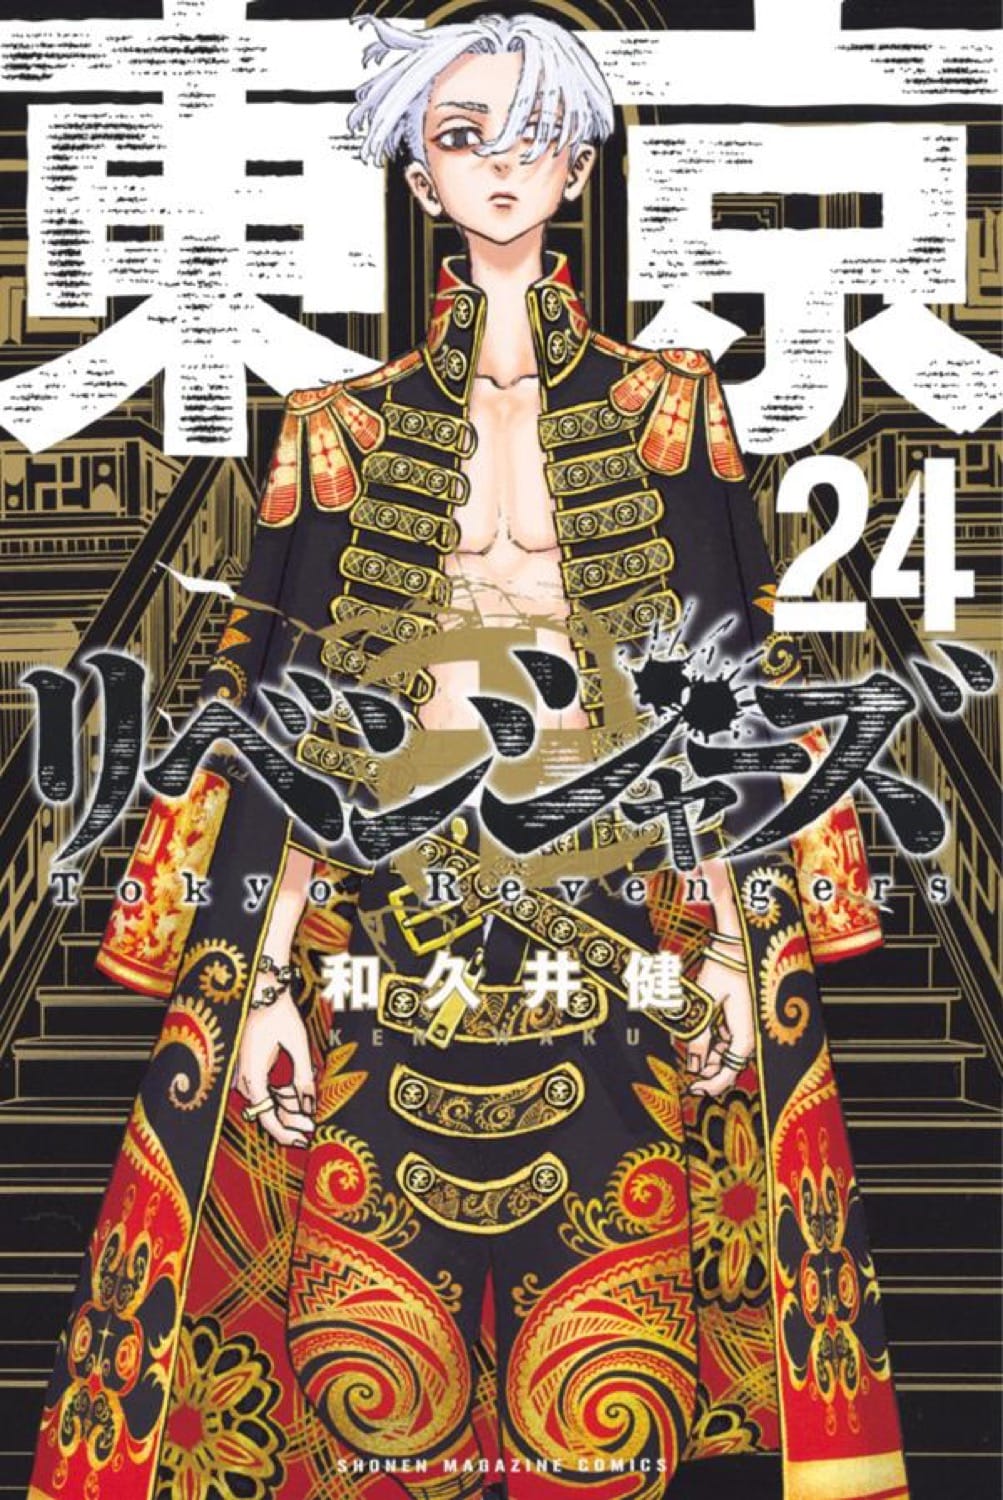 和久井健「東京卍リベンジャーズ」第25巻 2021年12月17日発売!